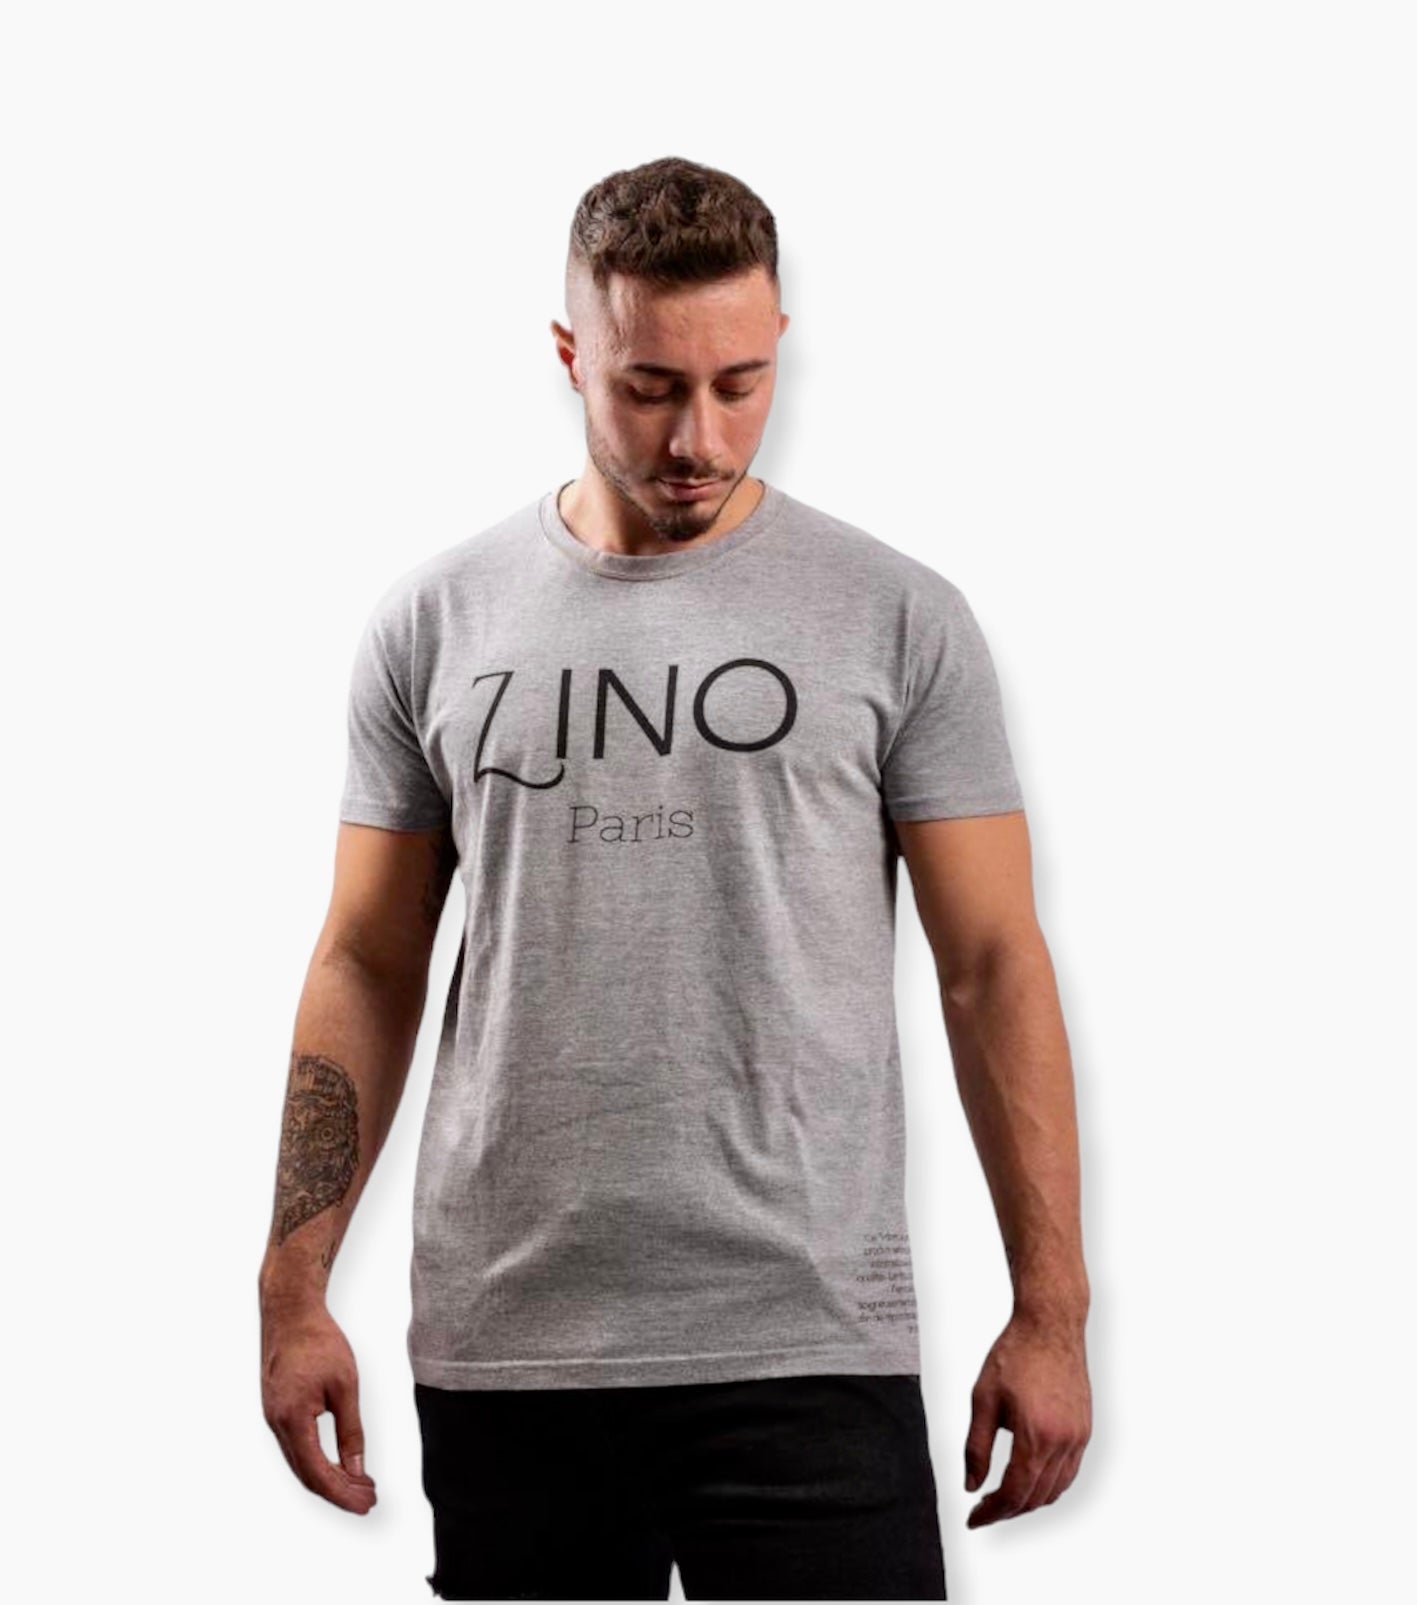 T-shirt de couleur gris, 100% coton. Logo de la marque ZINO imprimé sur la poitrine.